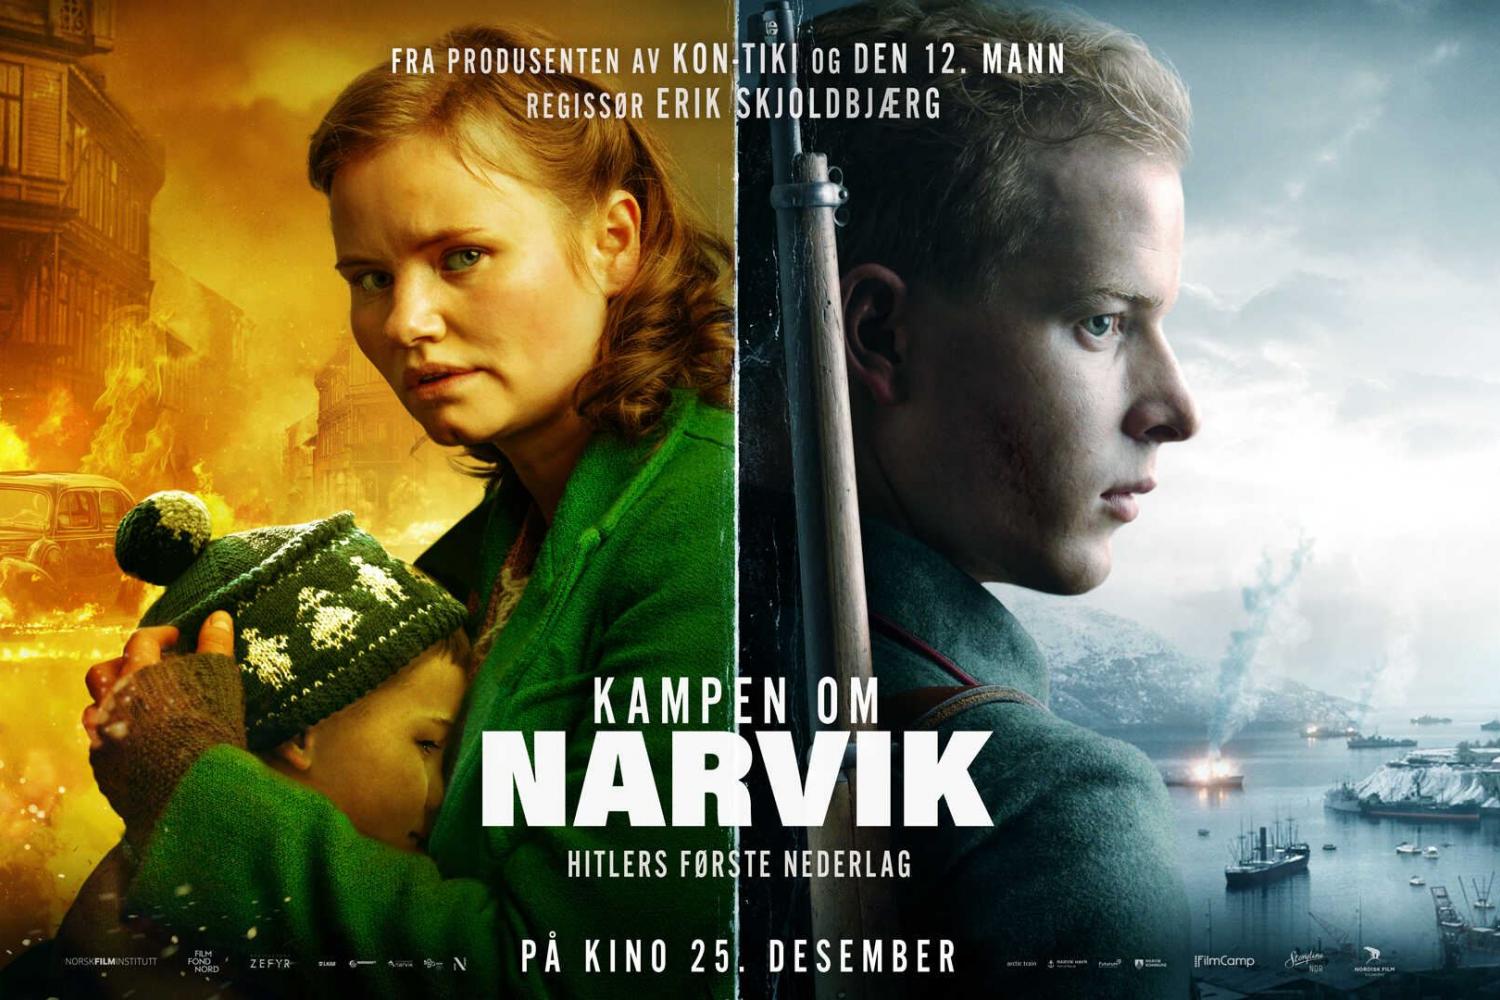  Utendørs verdenspremiere på Kampen om Narvik